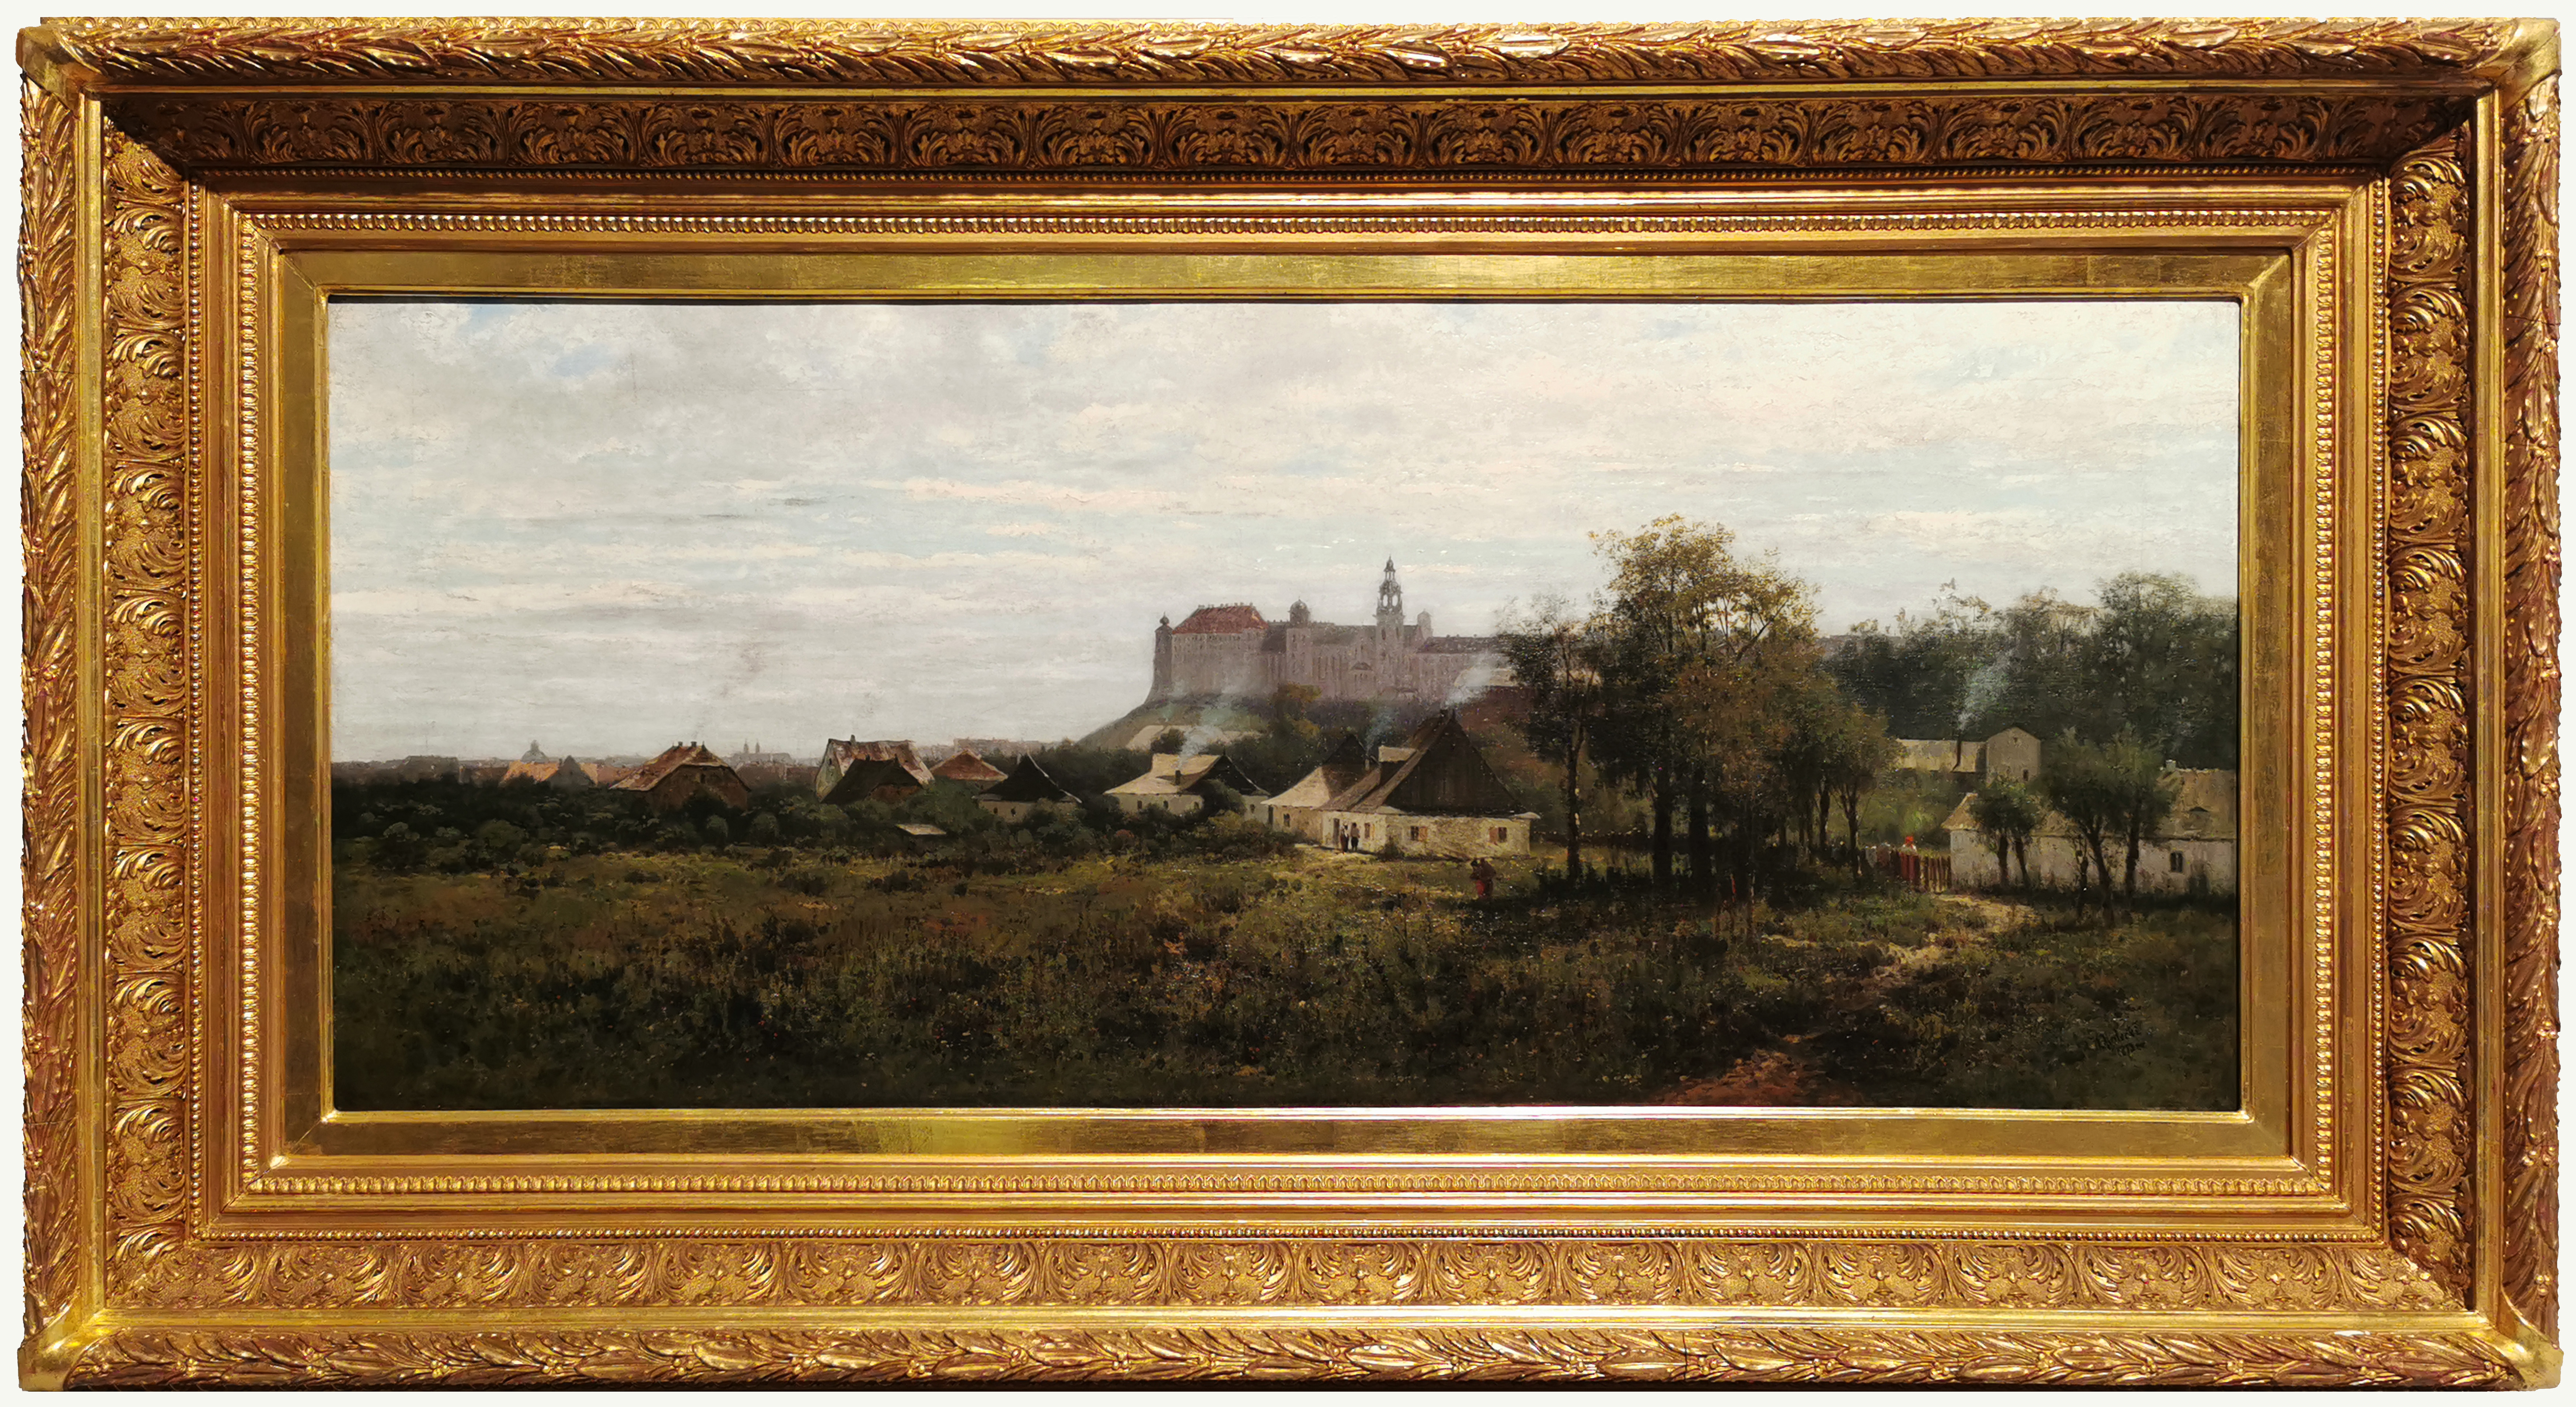 Zamek Królewski w Krakowie, 1873